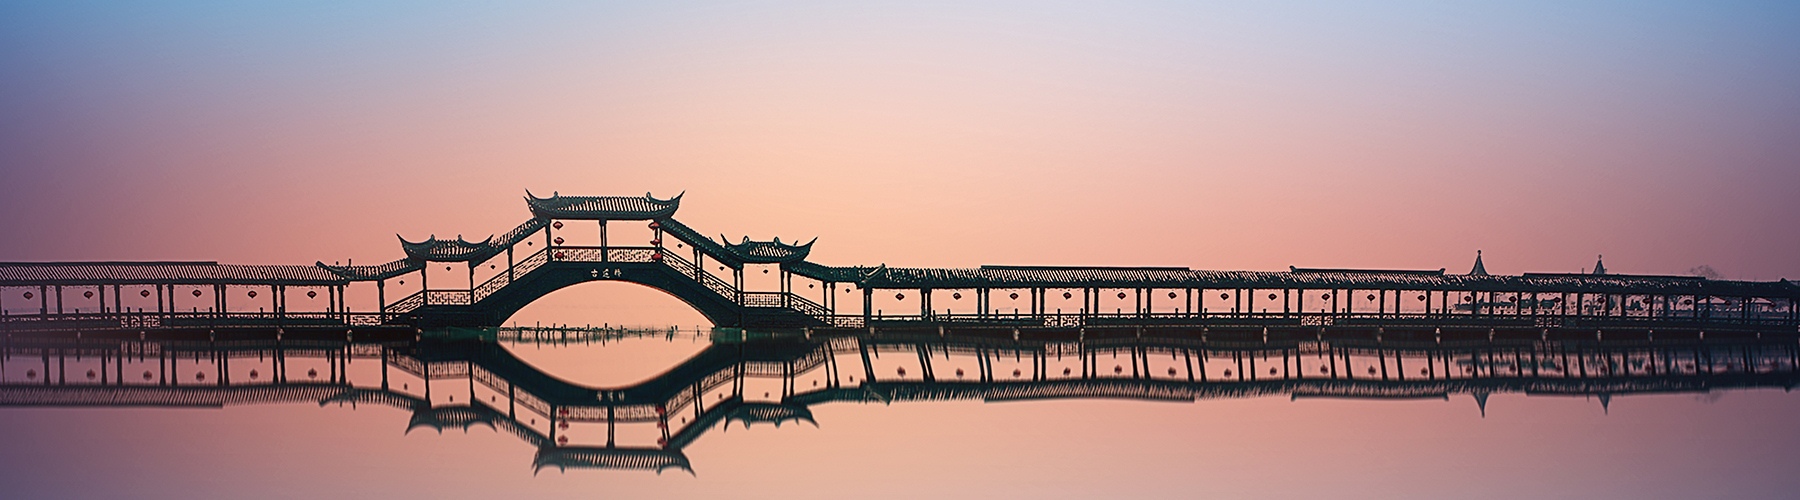 Zhaopai Bridge